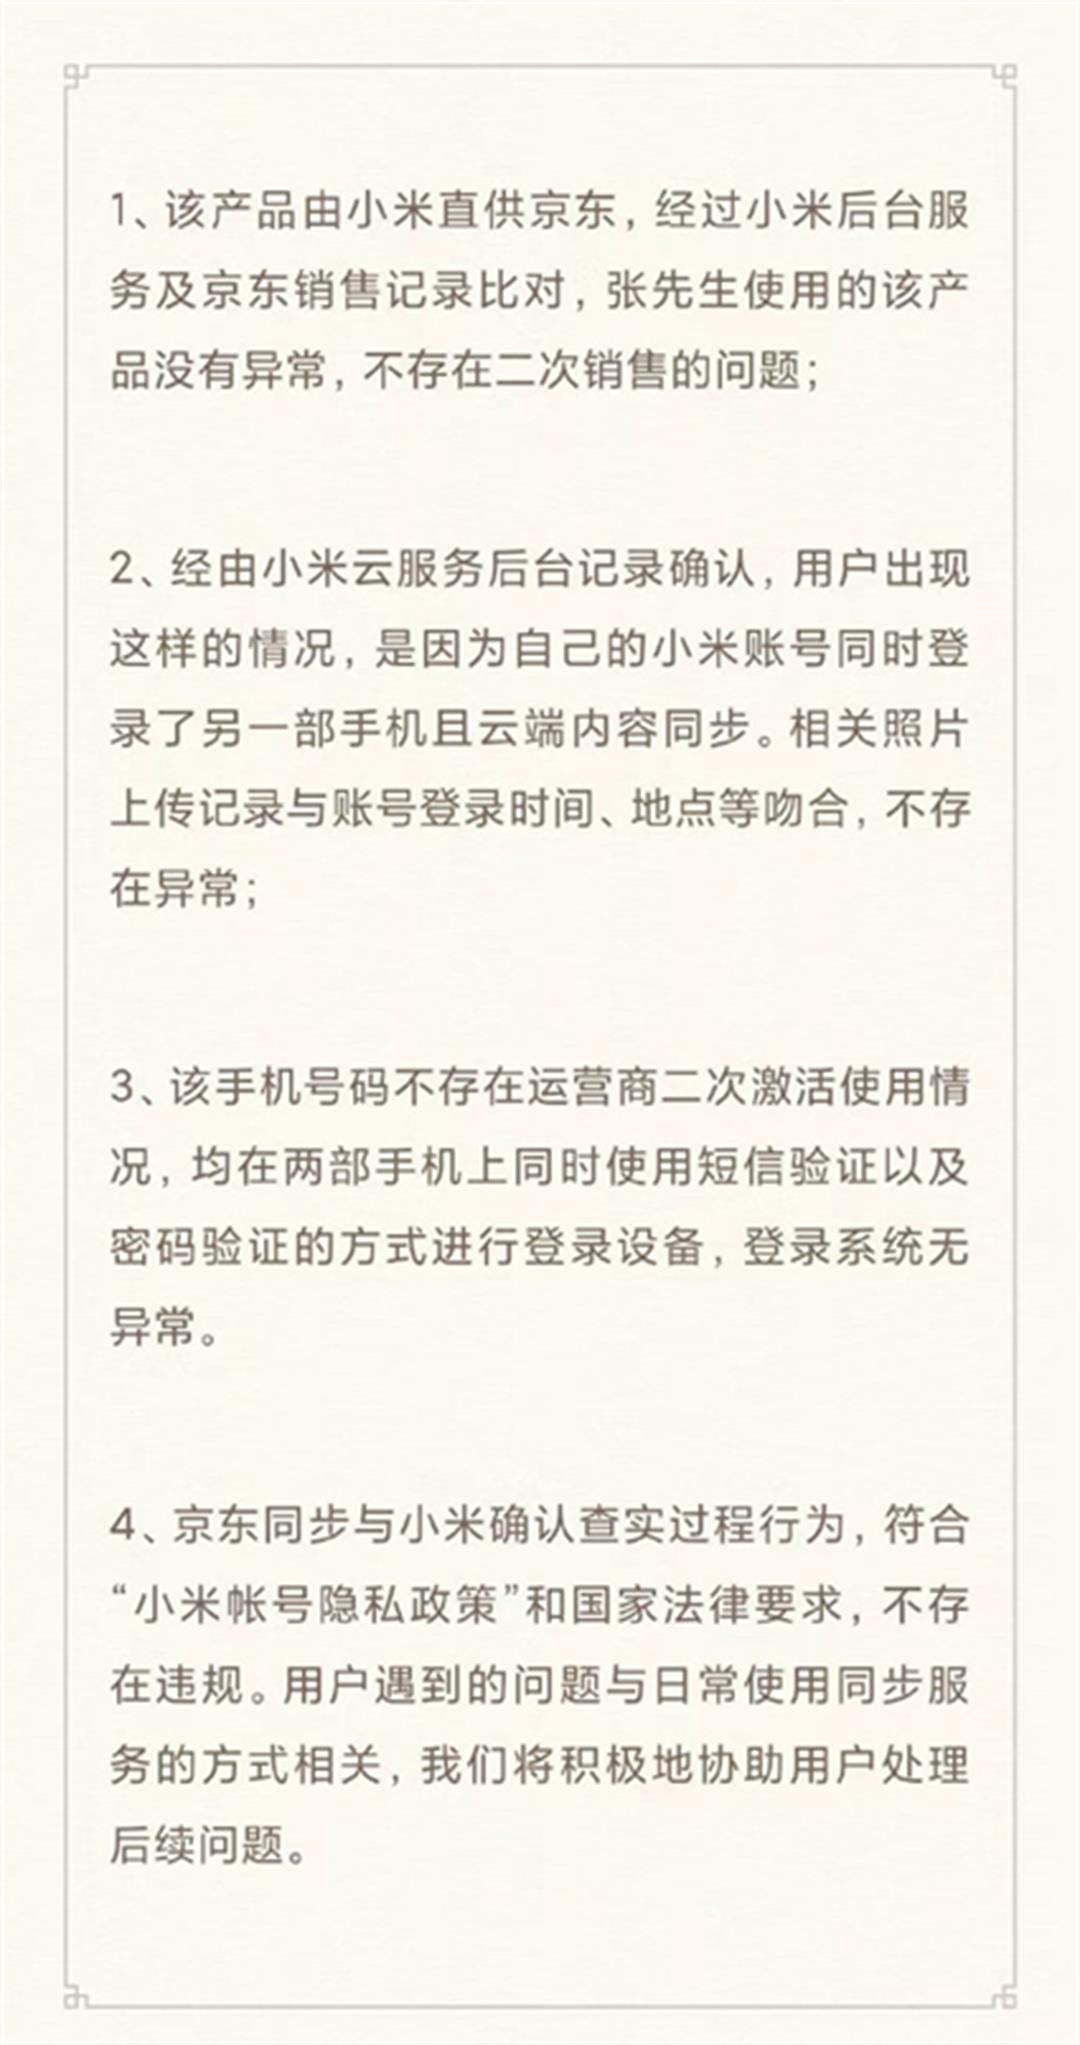 小米集團公關部總經理王化在其個人微博回應